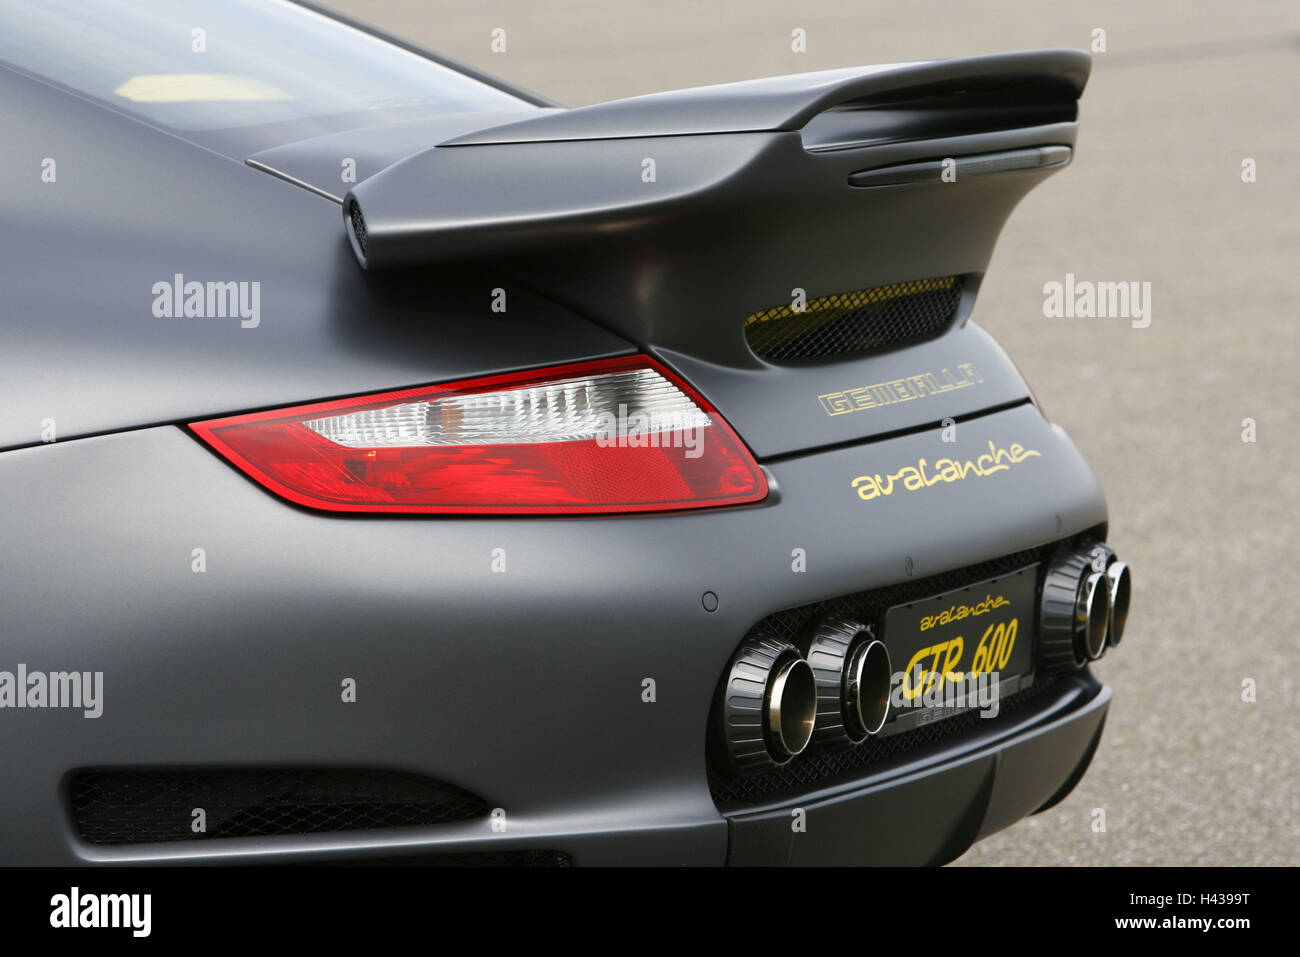 Gemballa Porsche GTR 600 Avalanche, matt black, rear, Stock Photo